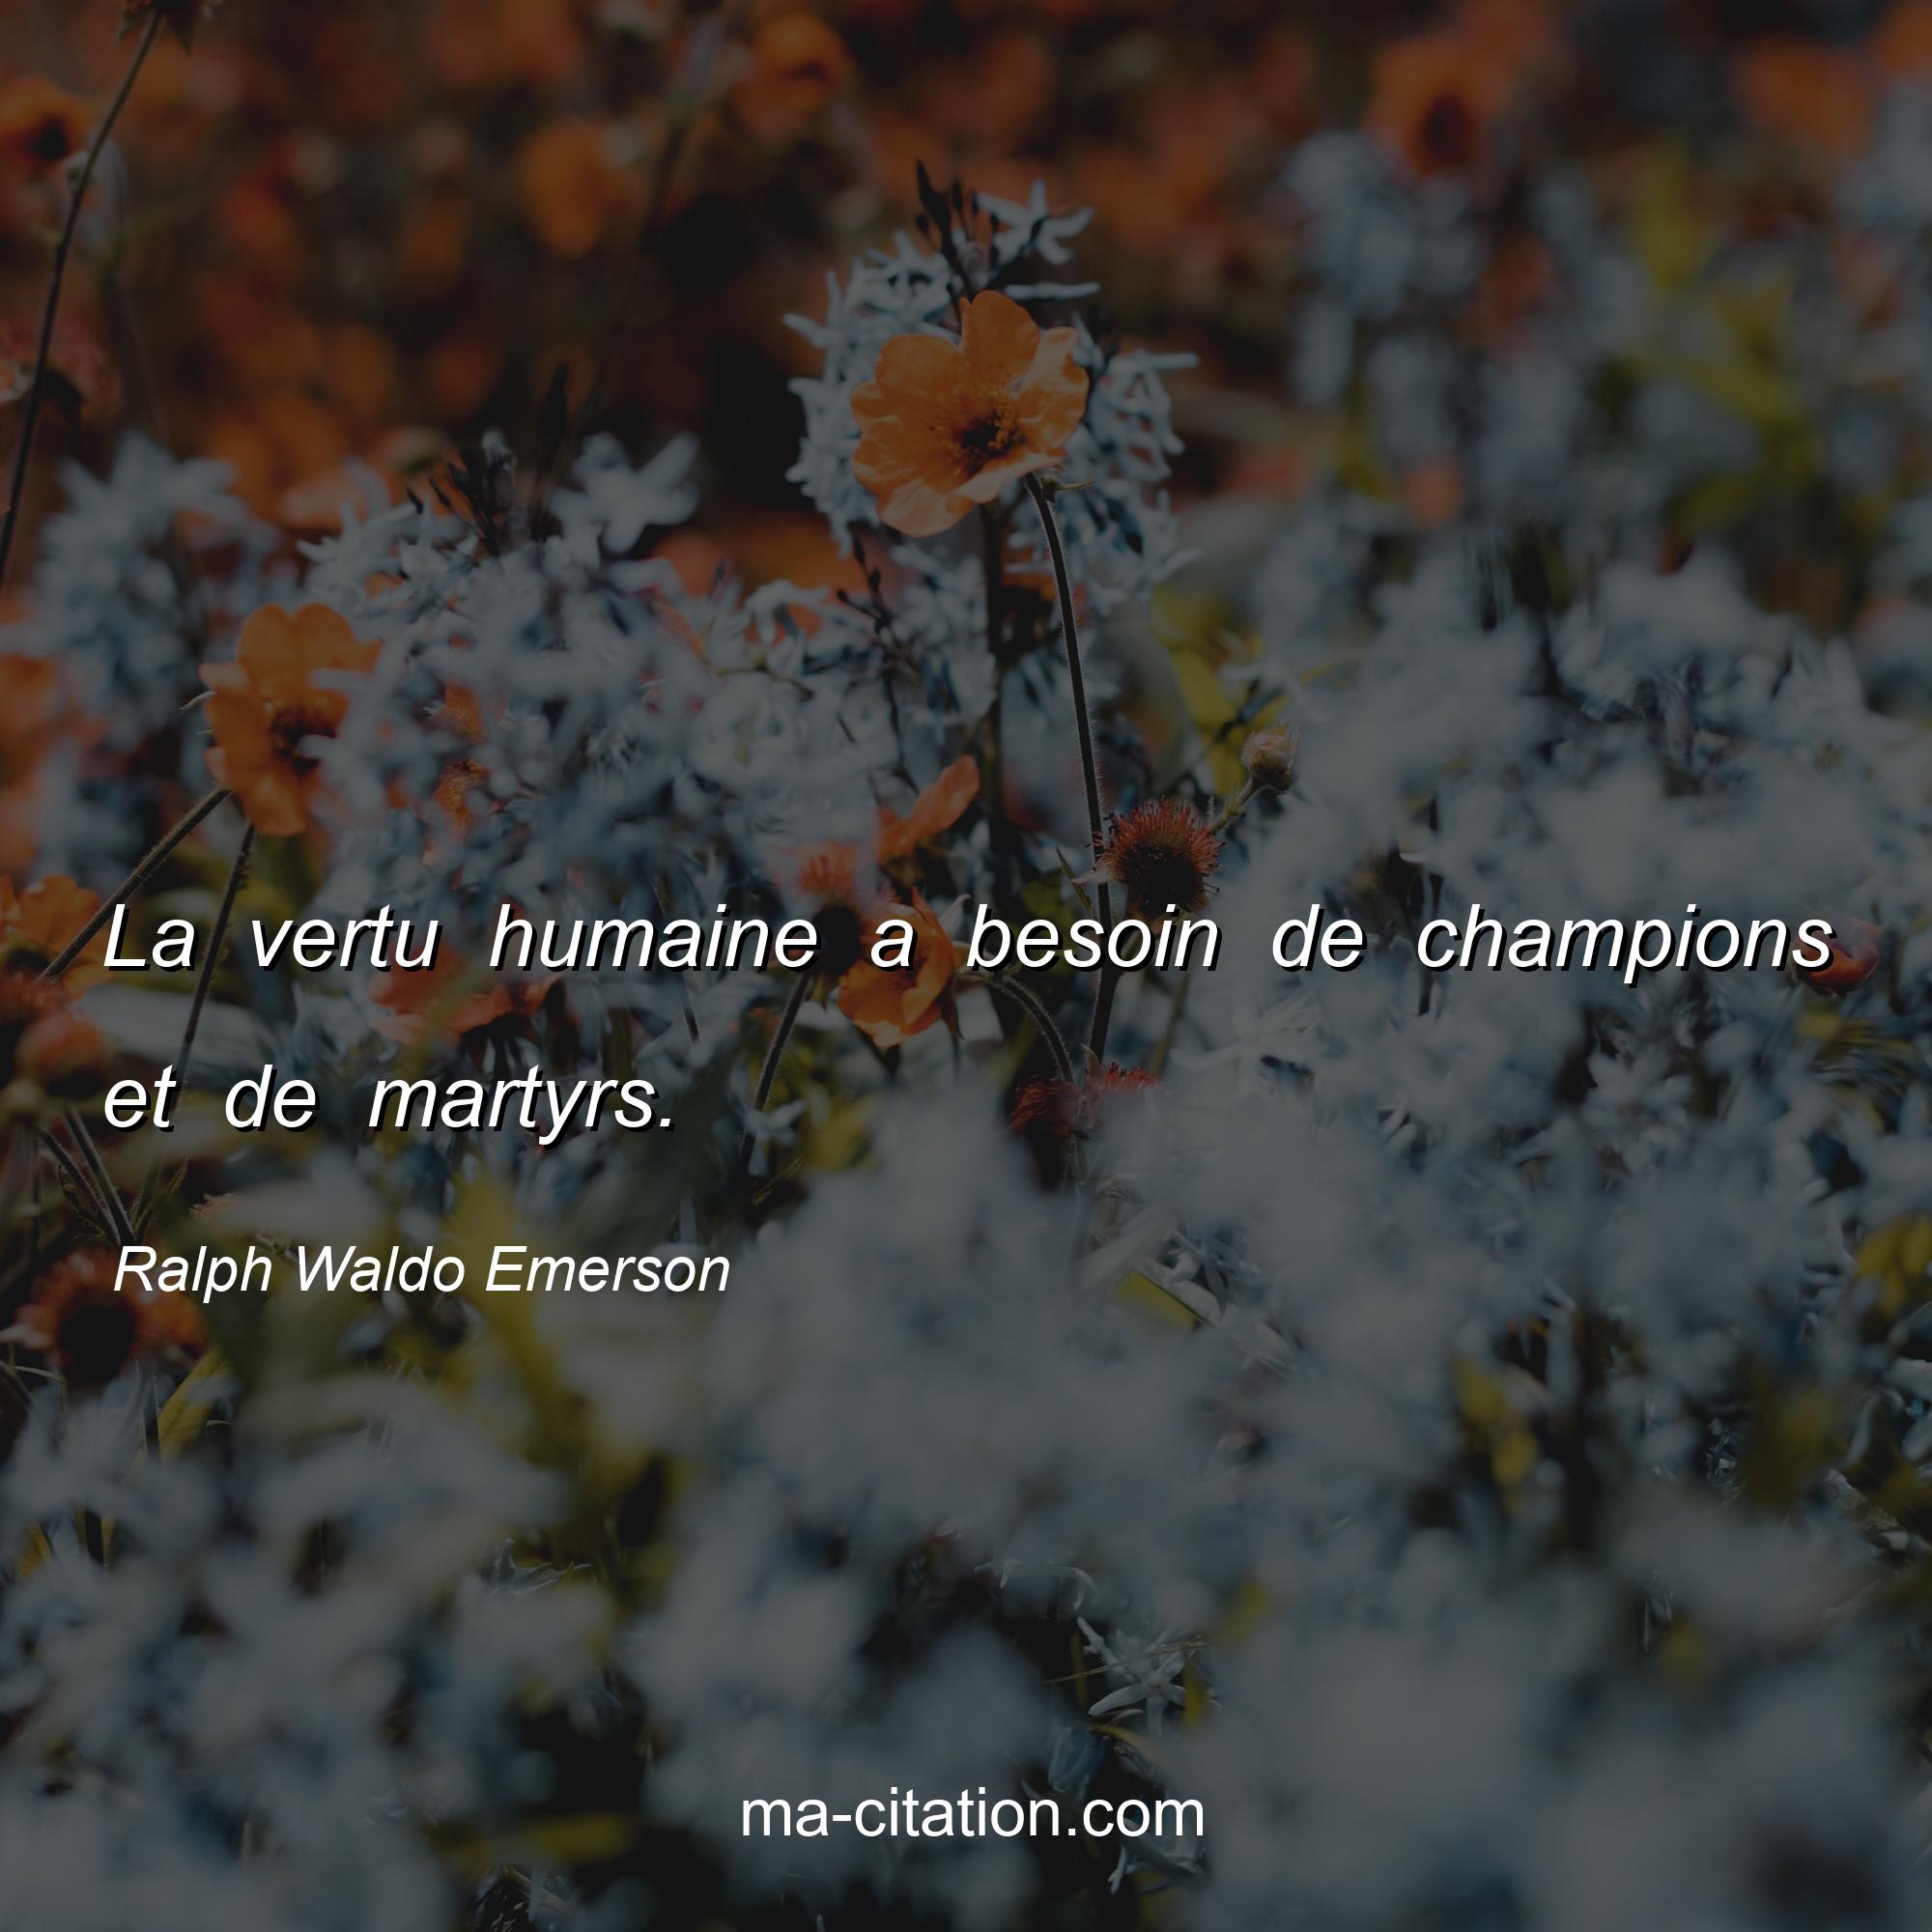 Ralph Waldo Emerson : La vertu humaine a besoin de champions et de martyrs.